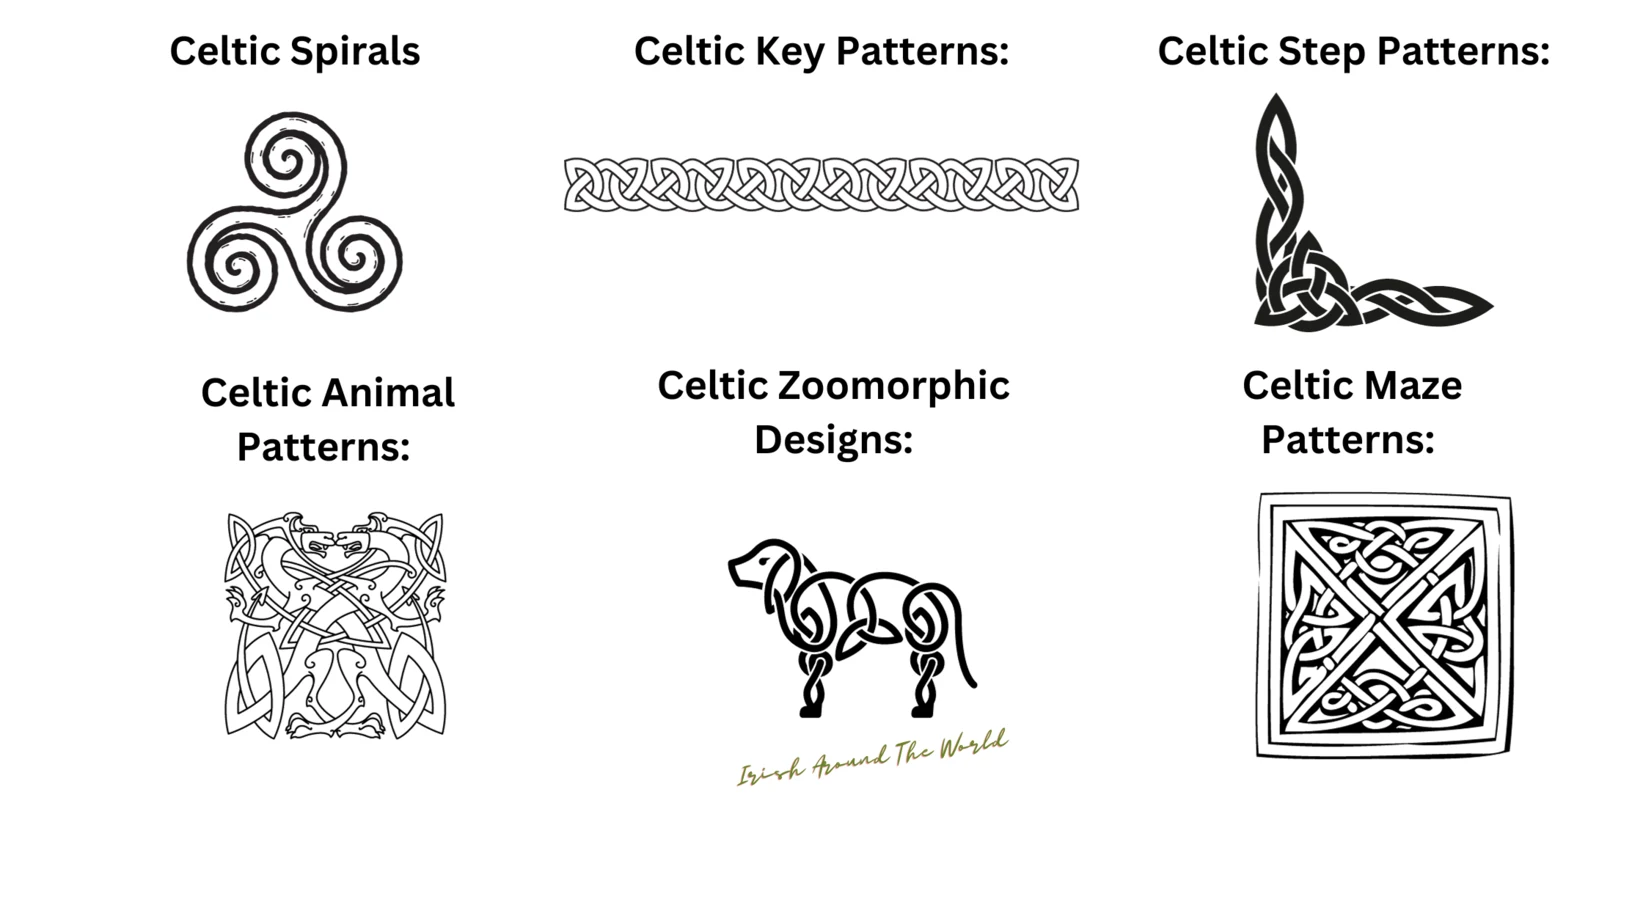 Celtic Spirals, Celtic Key Patterns, Celtic Maze Patterns, Celtic Animal Patterns, Celtic Zoomorphic Designs, 